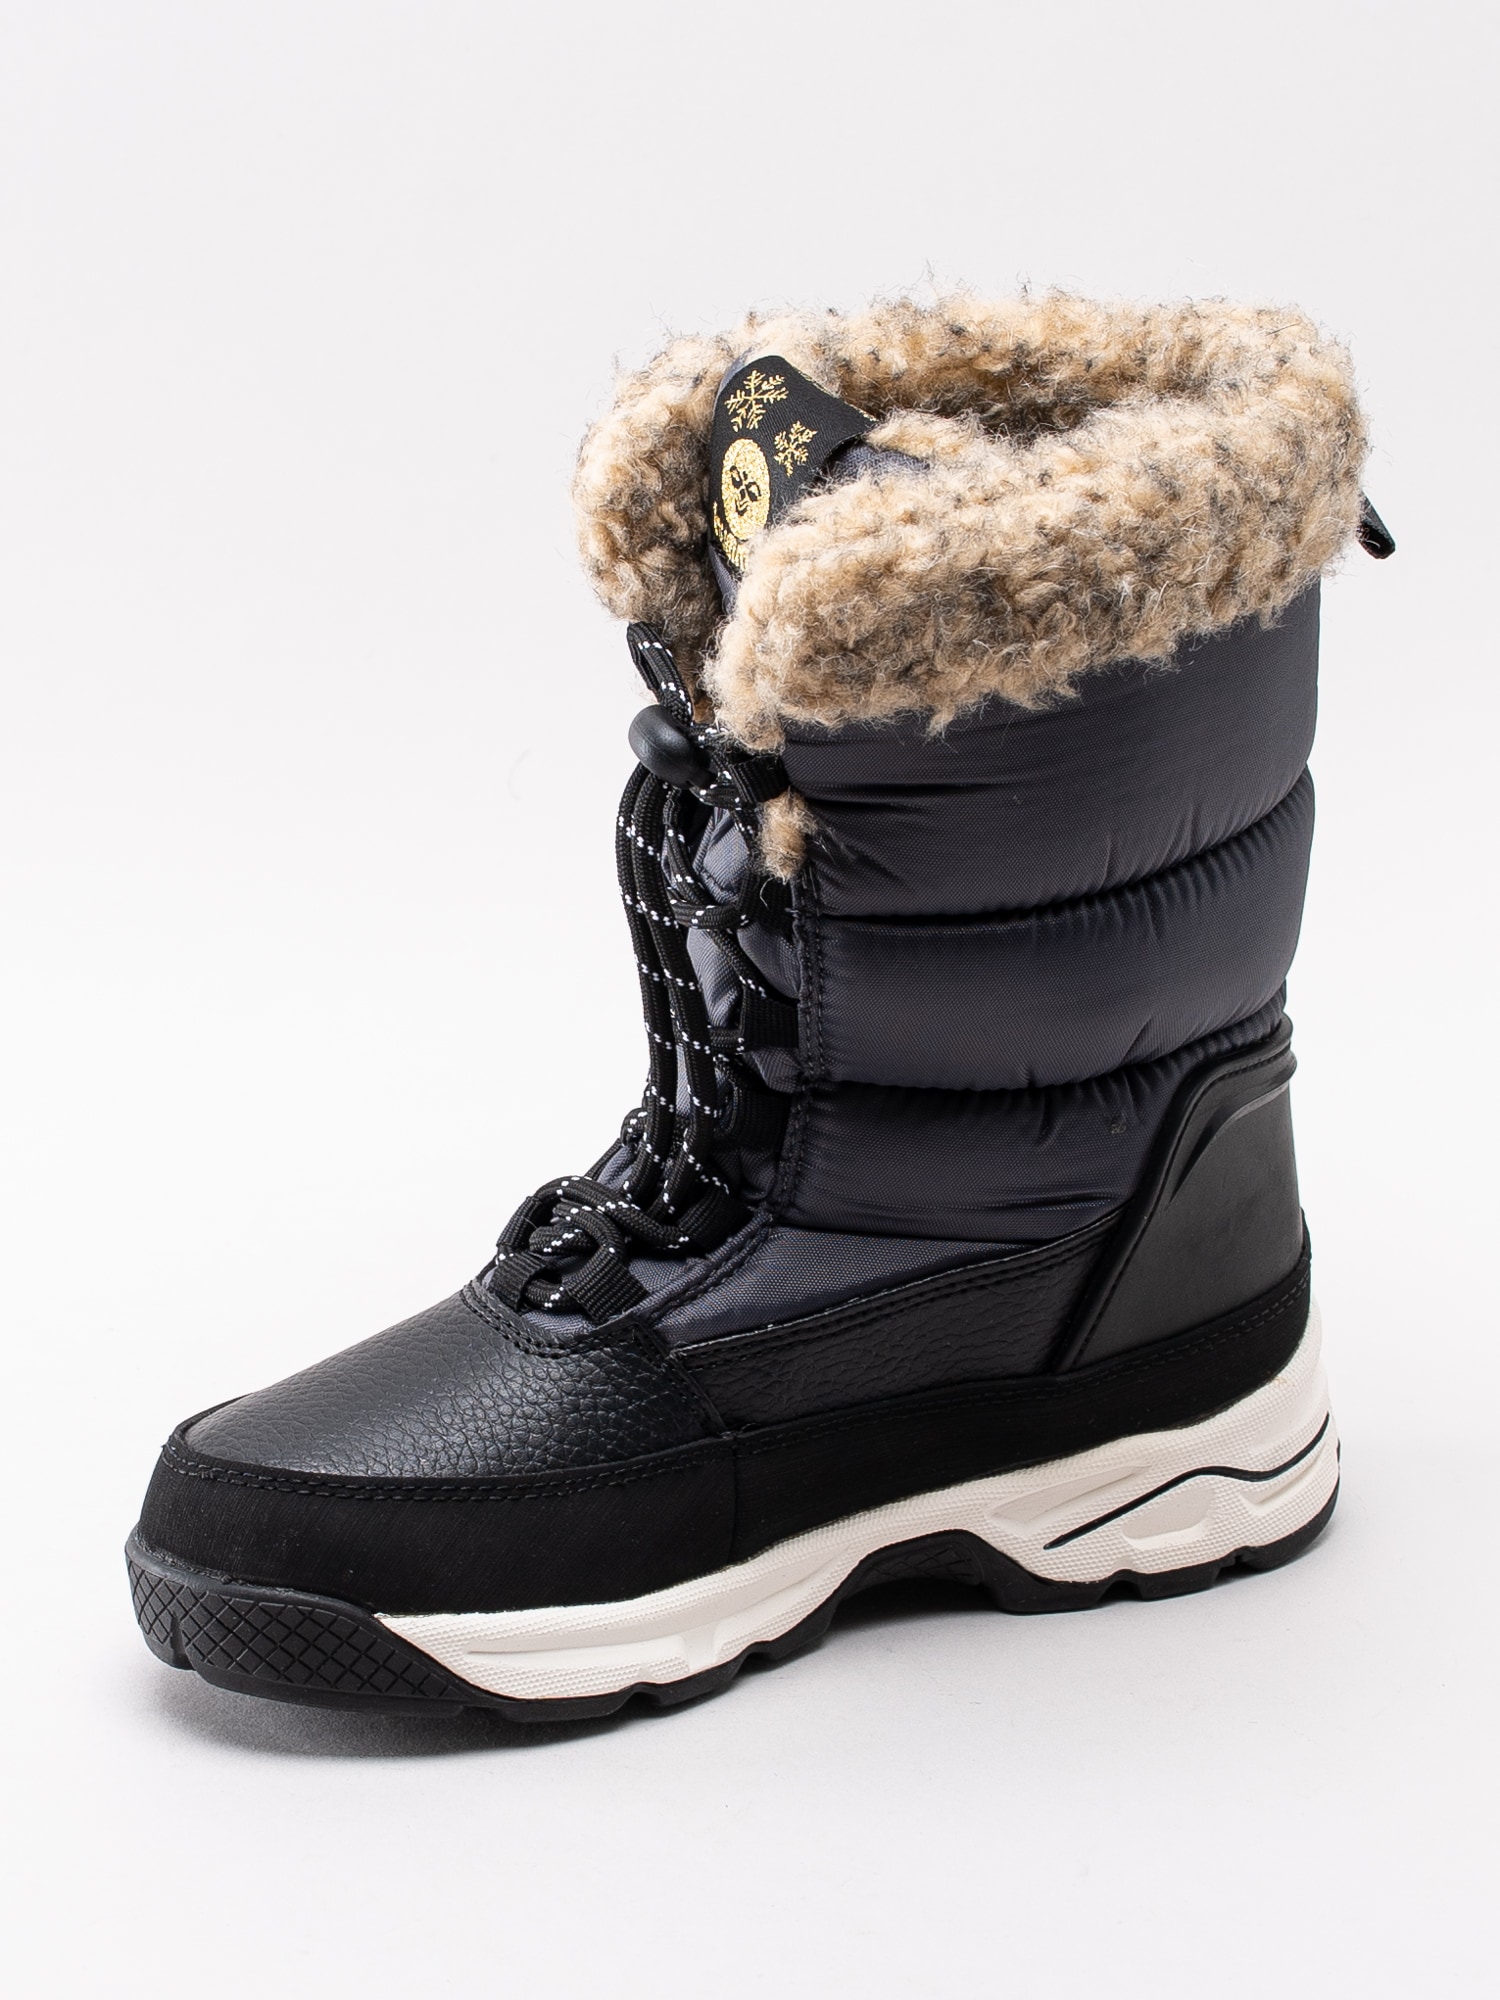 41193014 Hummel Snow Boot Junior WP 204-535-1525 mörkgrå vattentäta vinterstövlar med fuskpäls-2